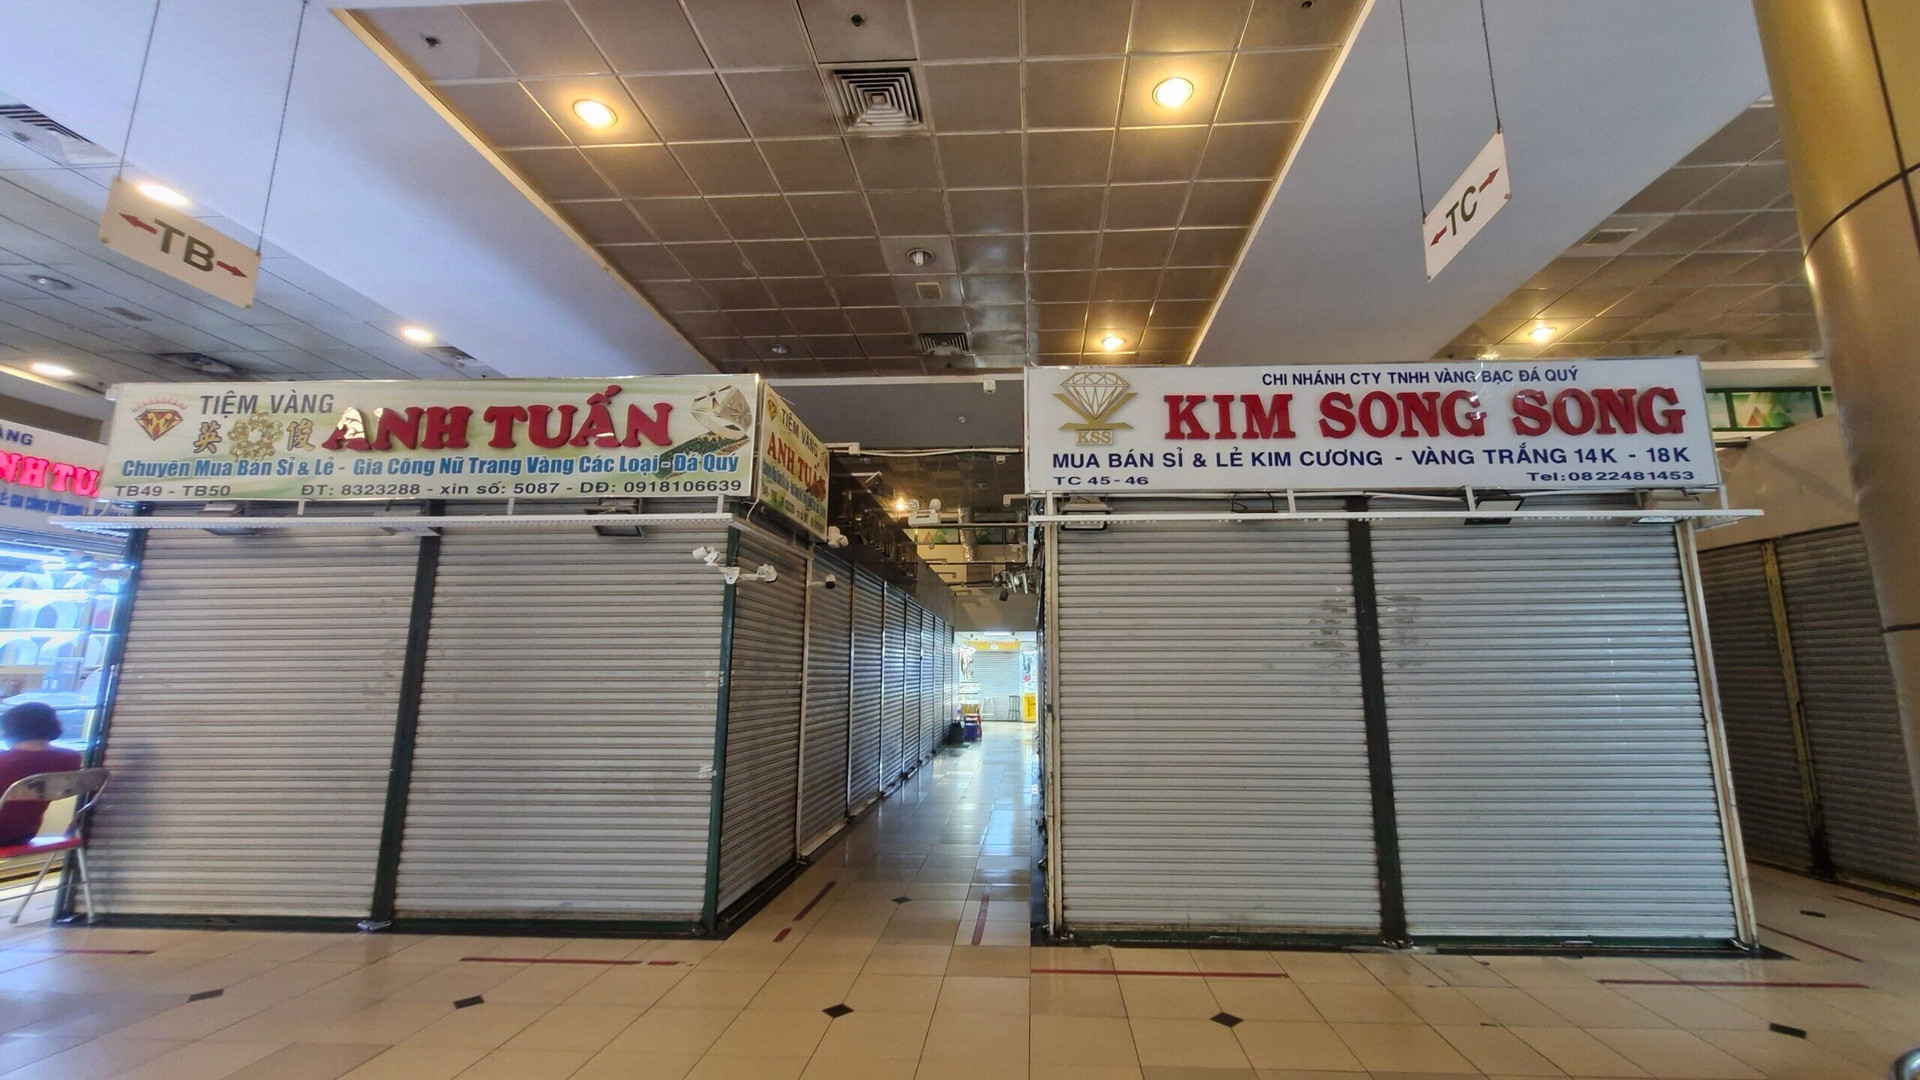 Nhiều tiệm vàng ở trung tâm thương mại An Đông đóng cửa trưa 18/6. (Ảnh: H. Linh)